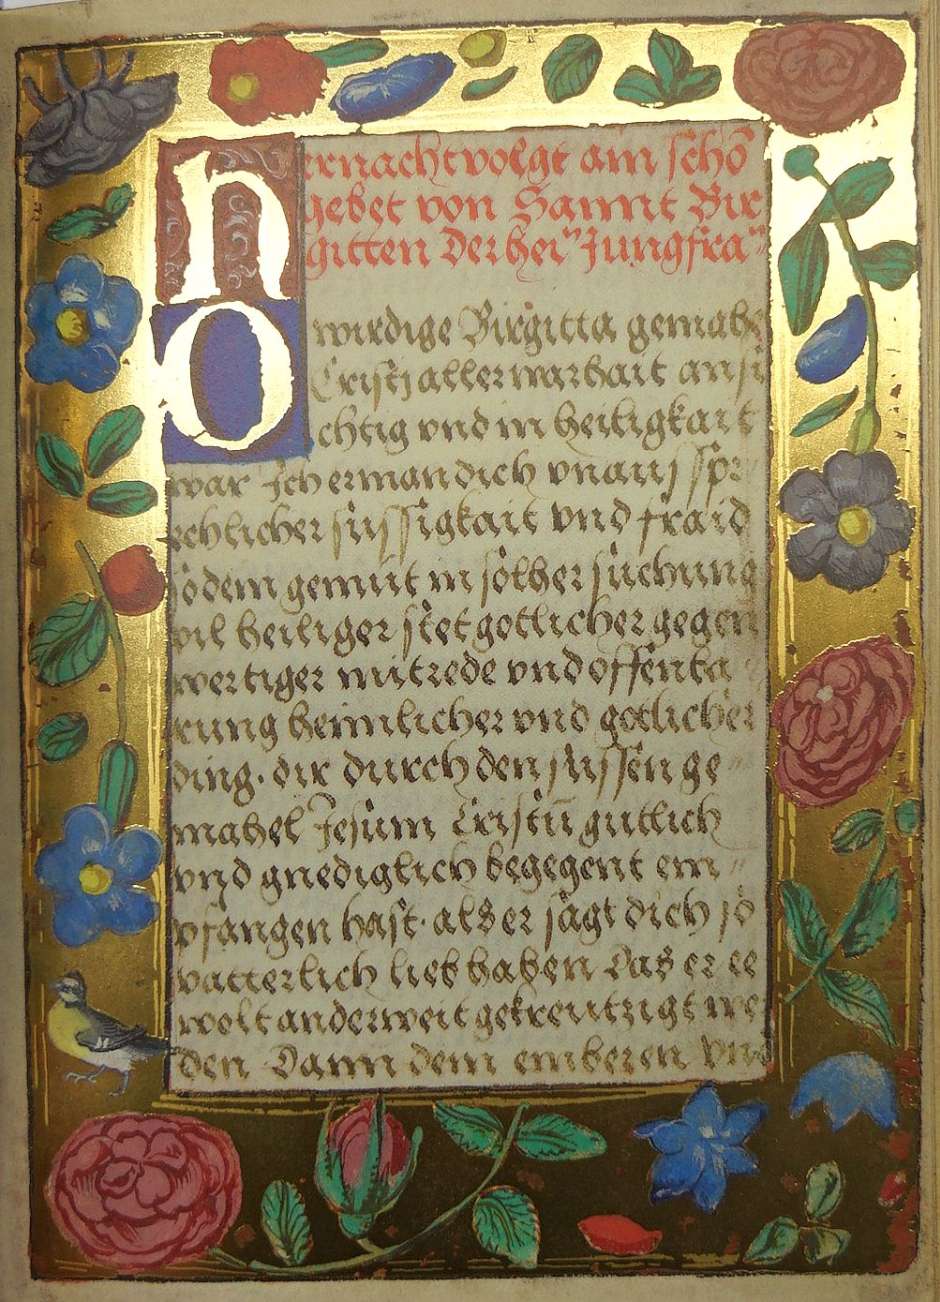 Lot 1404, Auction  115, deutsche Gebetbuch der Markgräfin von Brandenburg, Das, Hs. Durlach 2 Badische Landesbibliothek